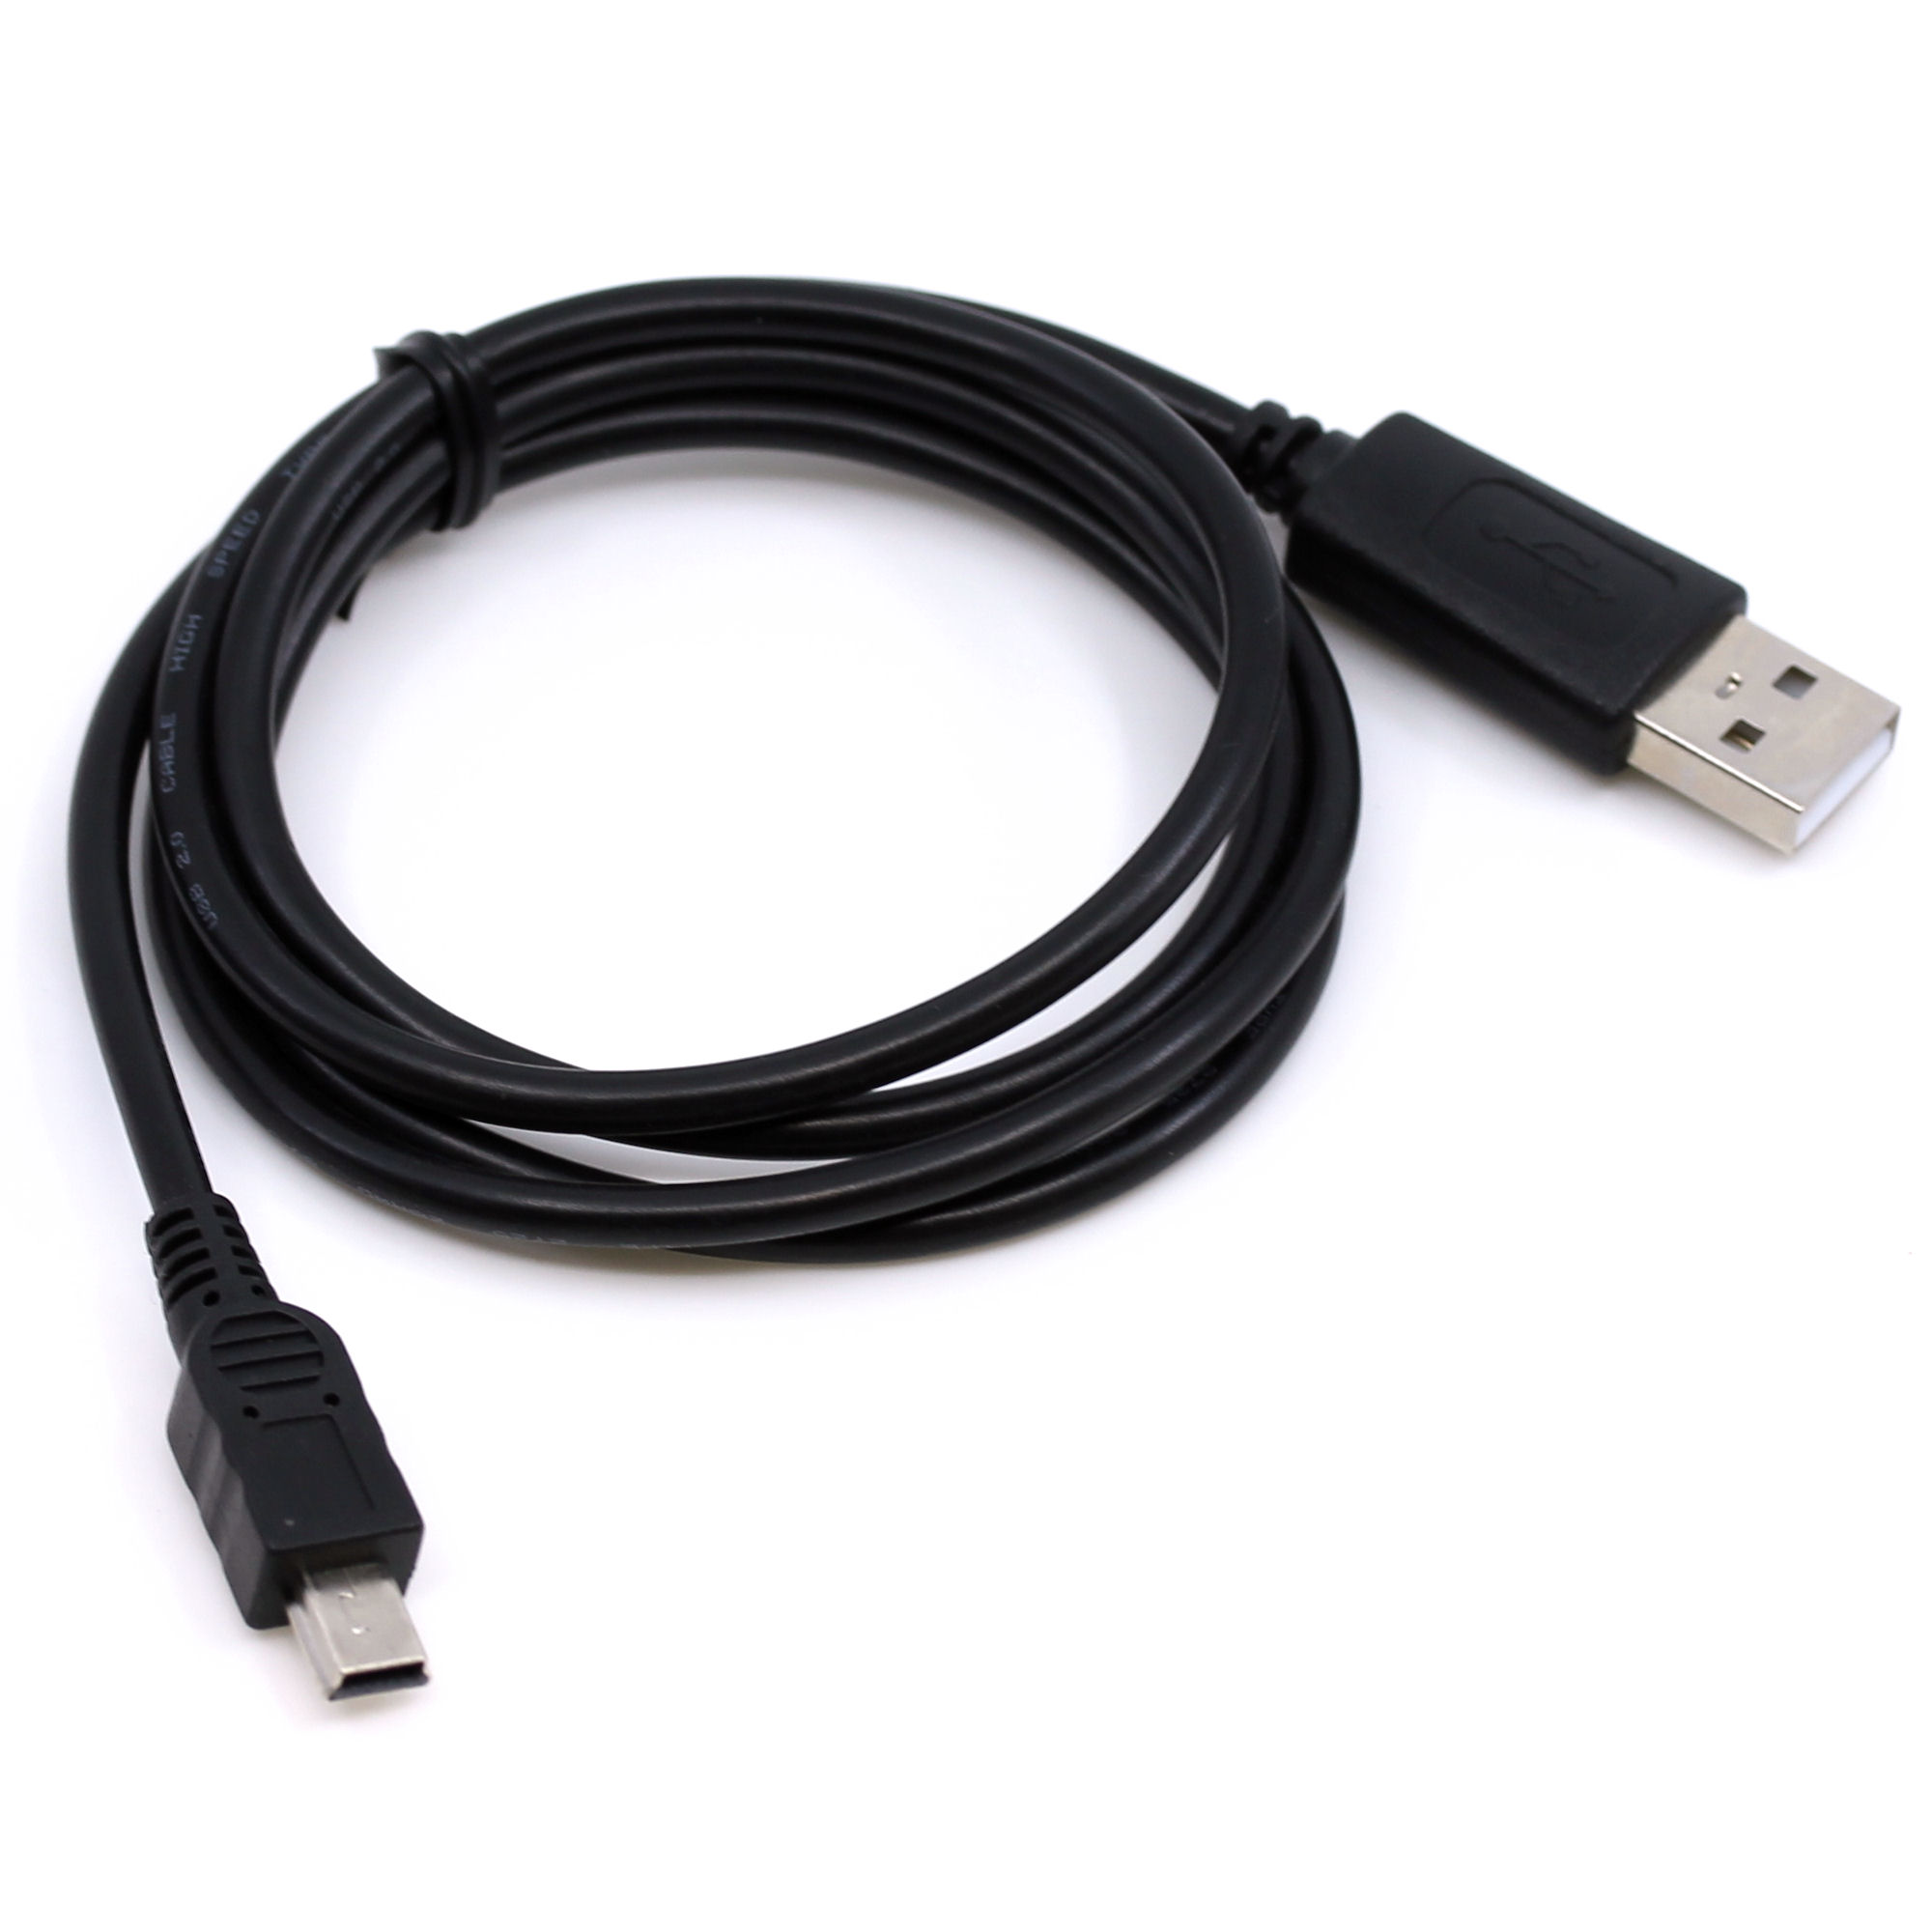 USB Datenkabel für Casio QV-GV10, QV-GV20, QV-R3, QV-R4, QV-R40, QV-R4000, QV-R5300, QV-R5700